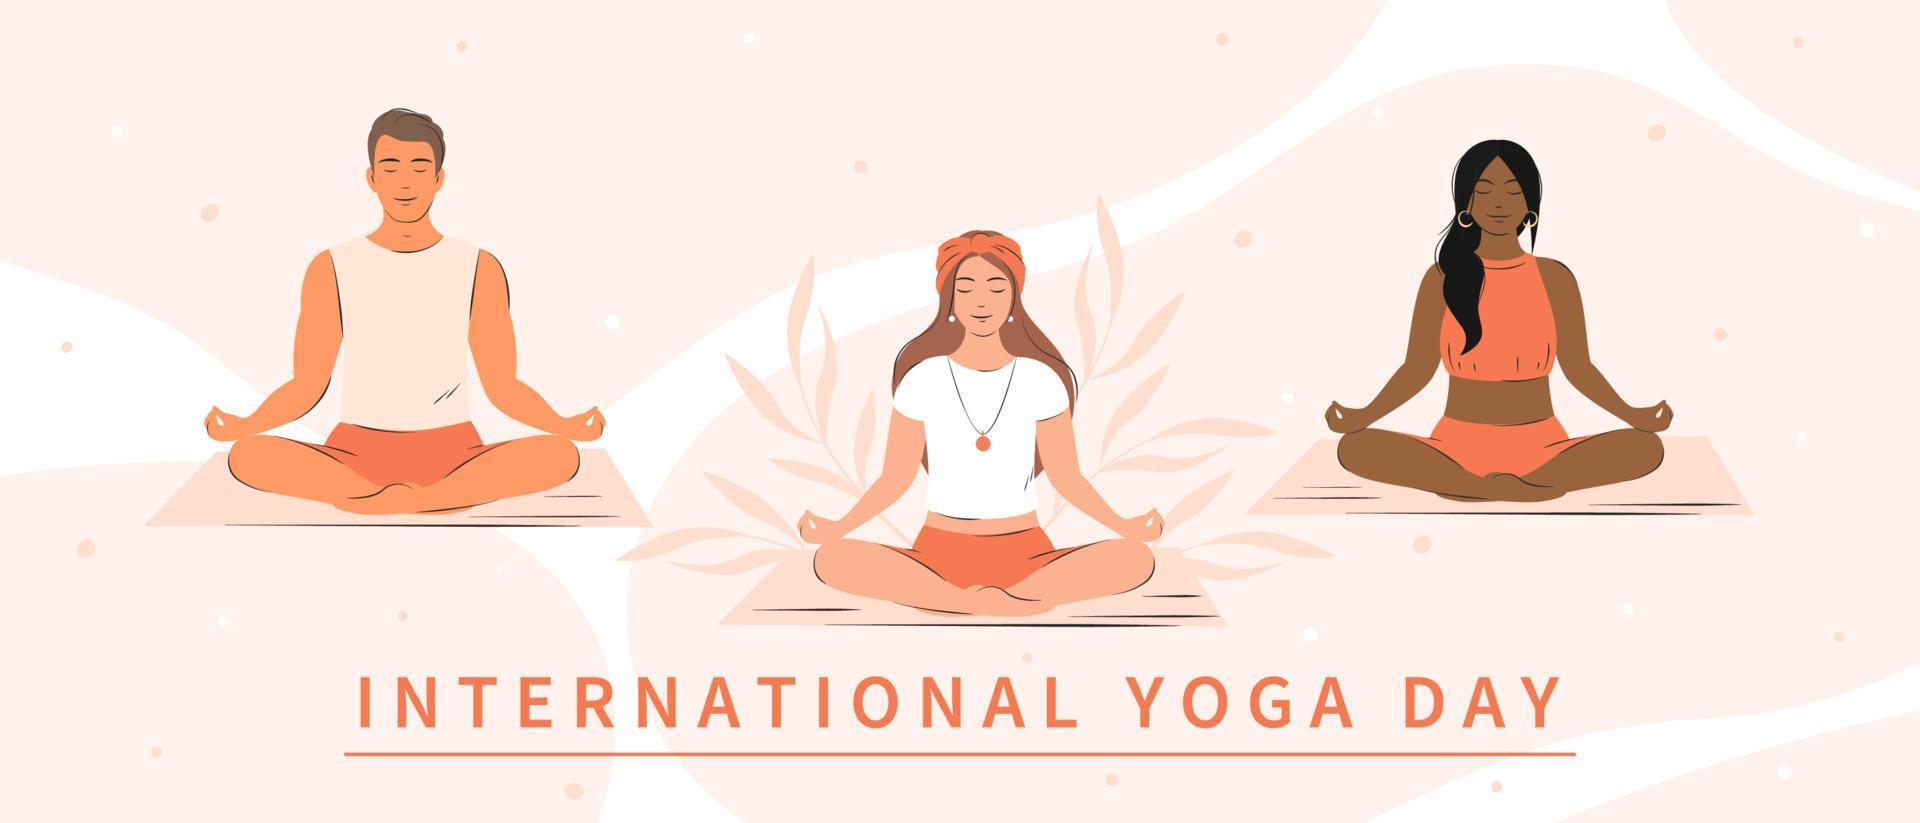 internacional yoga día. varios personas practicando yoga juntos y meditando vector ilustración